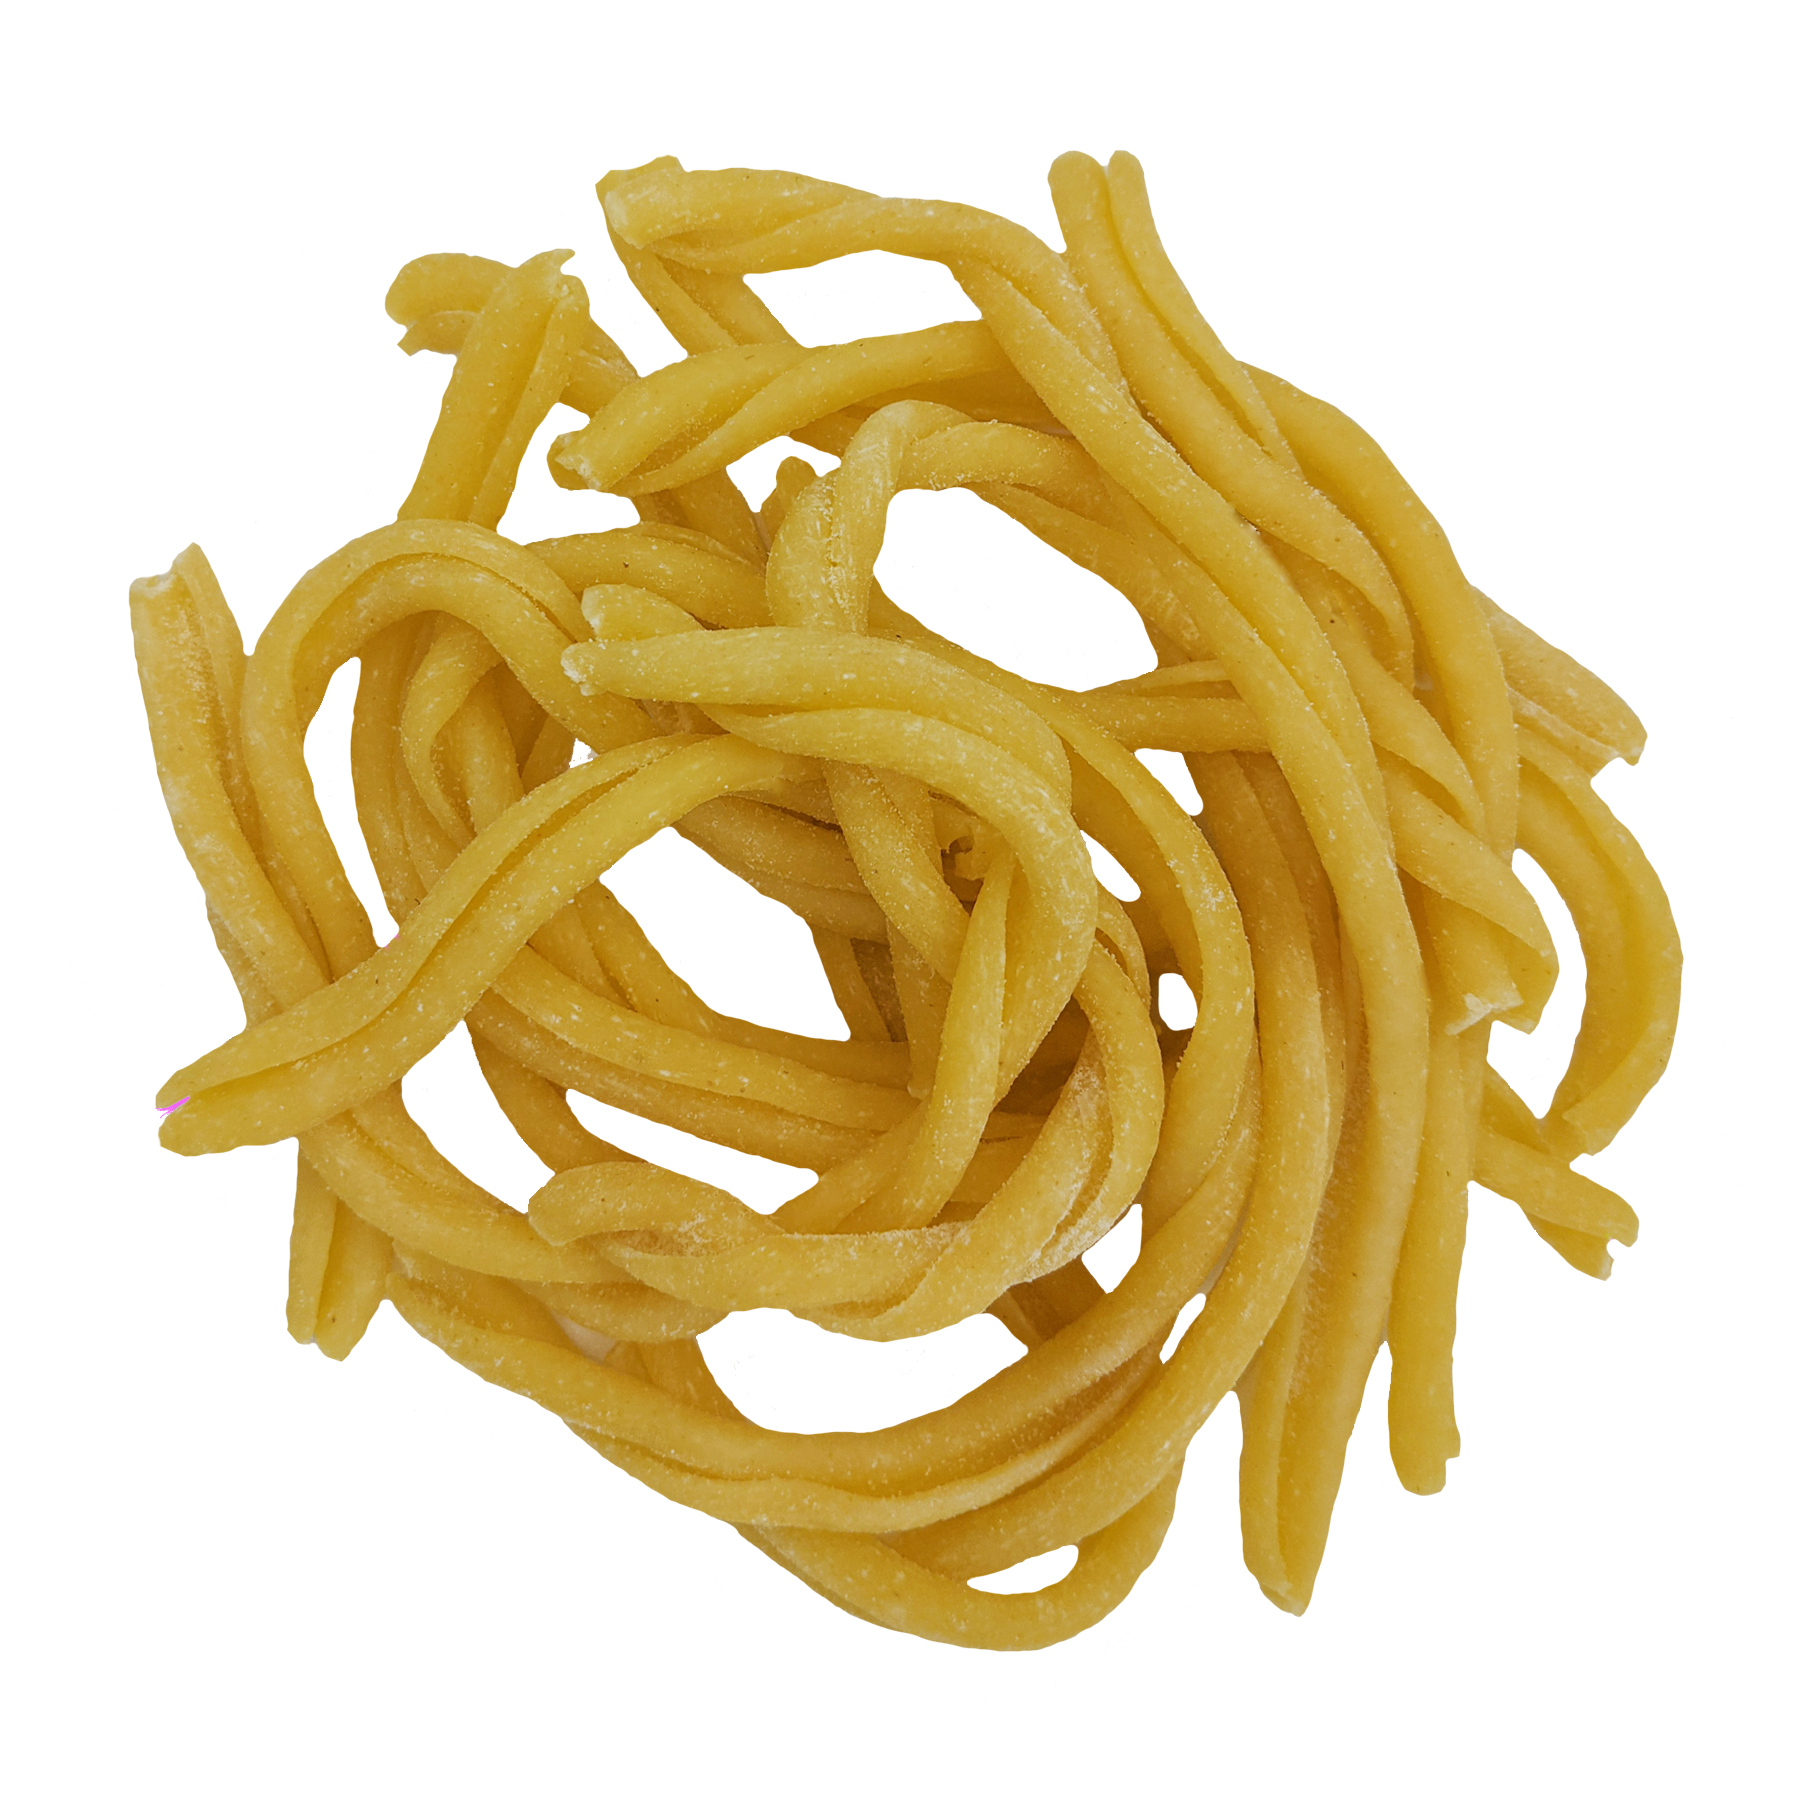 Strozzapreti 250g – Pastaio Maffei La pasta fresca italiana dal 1960